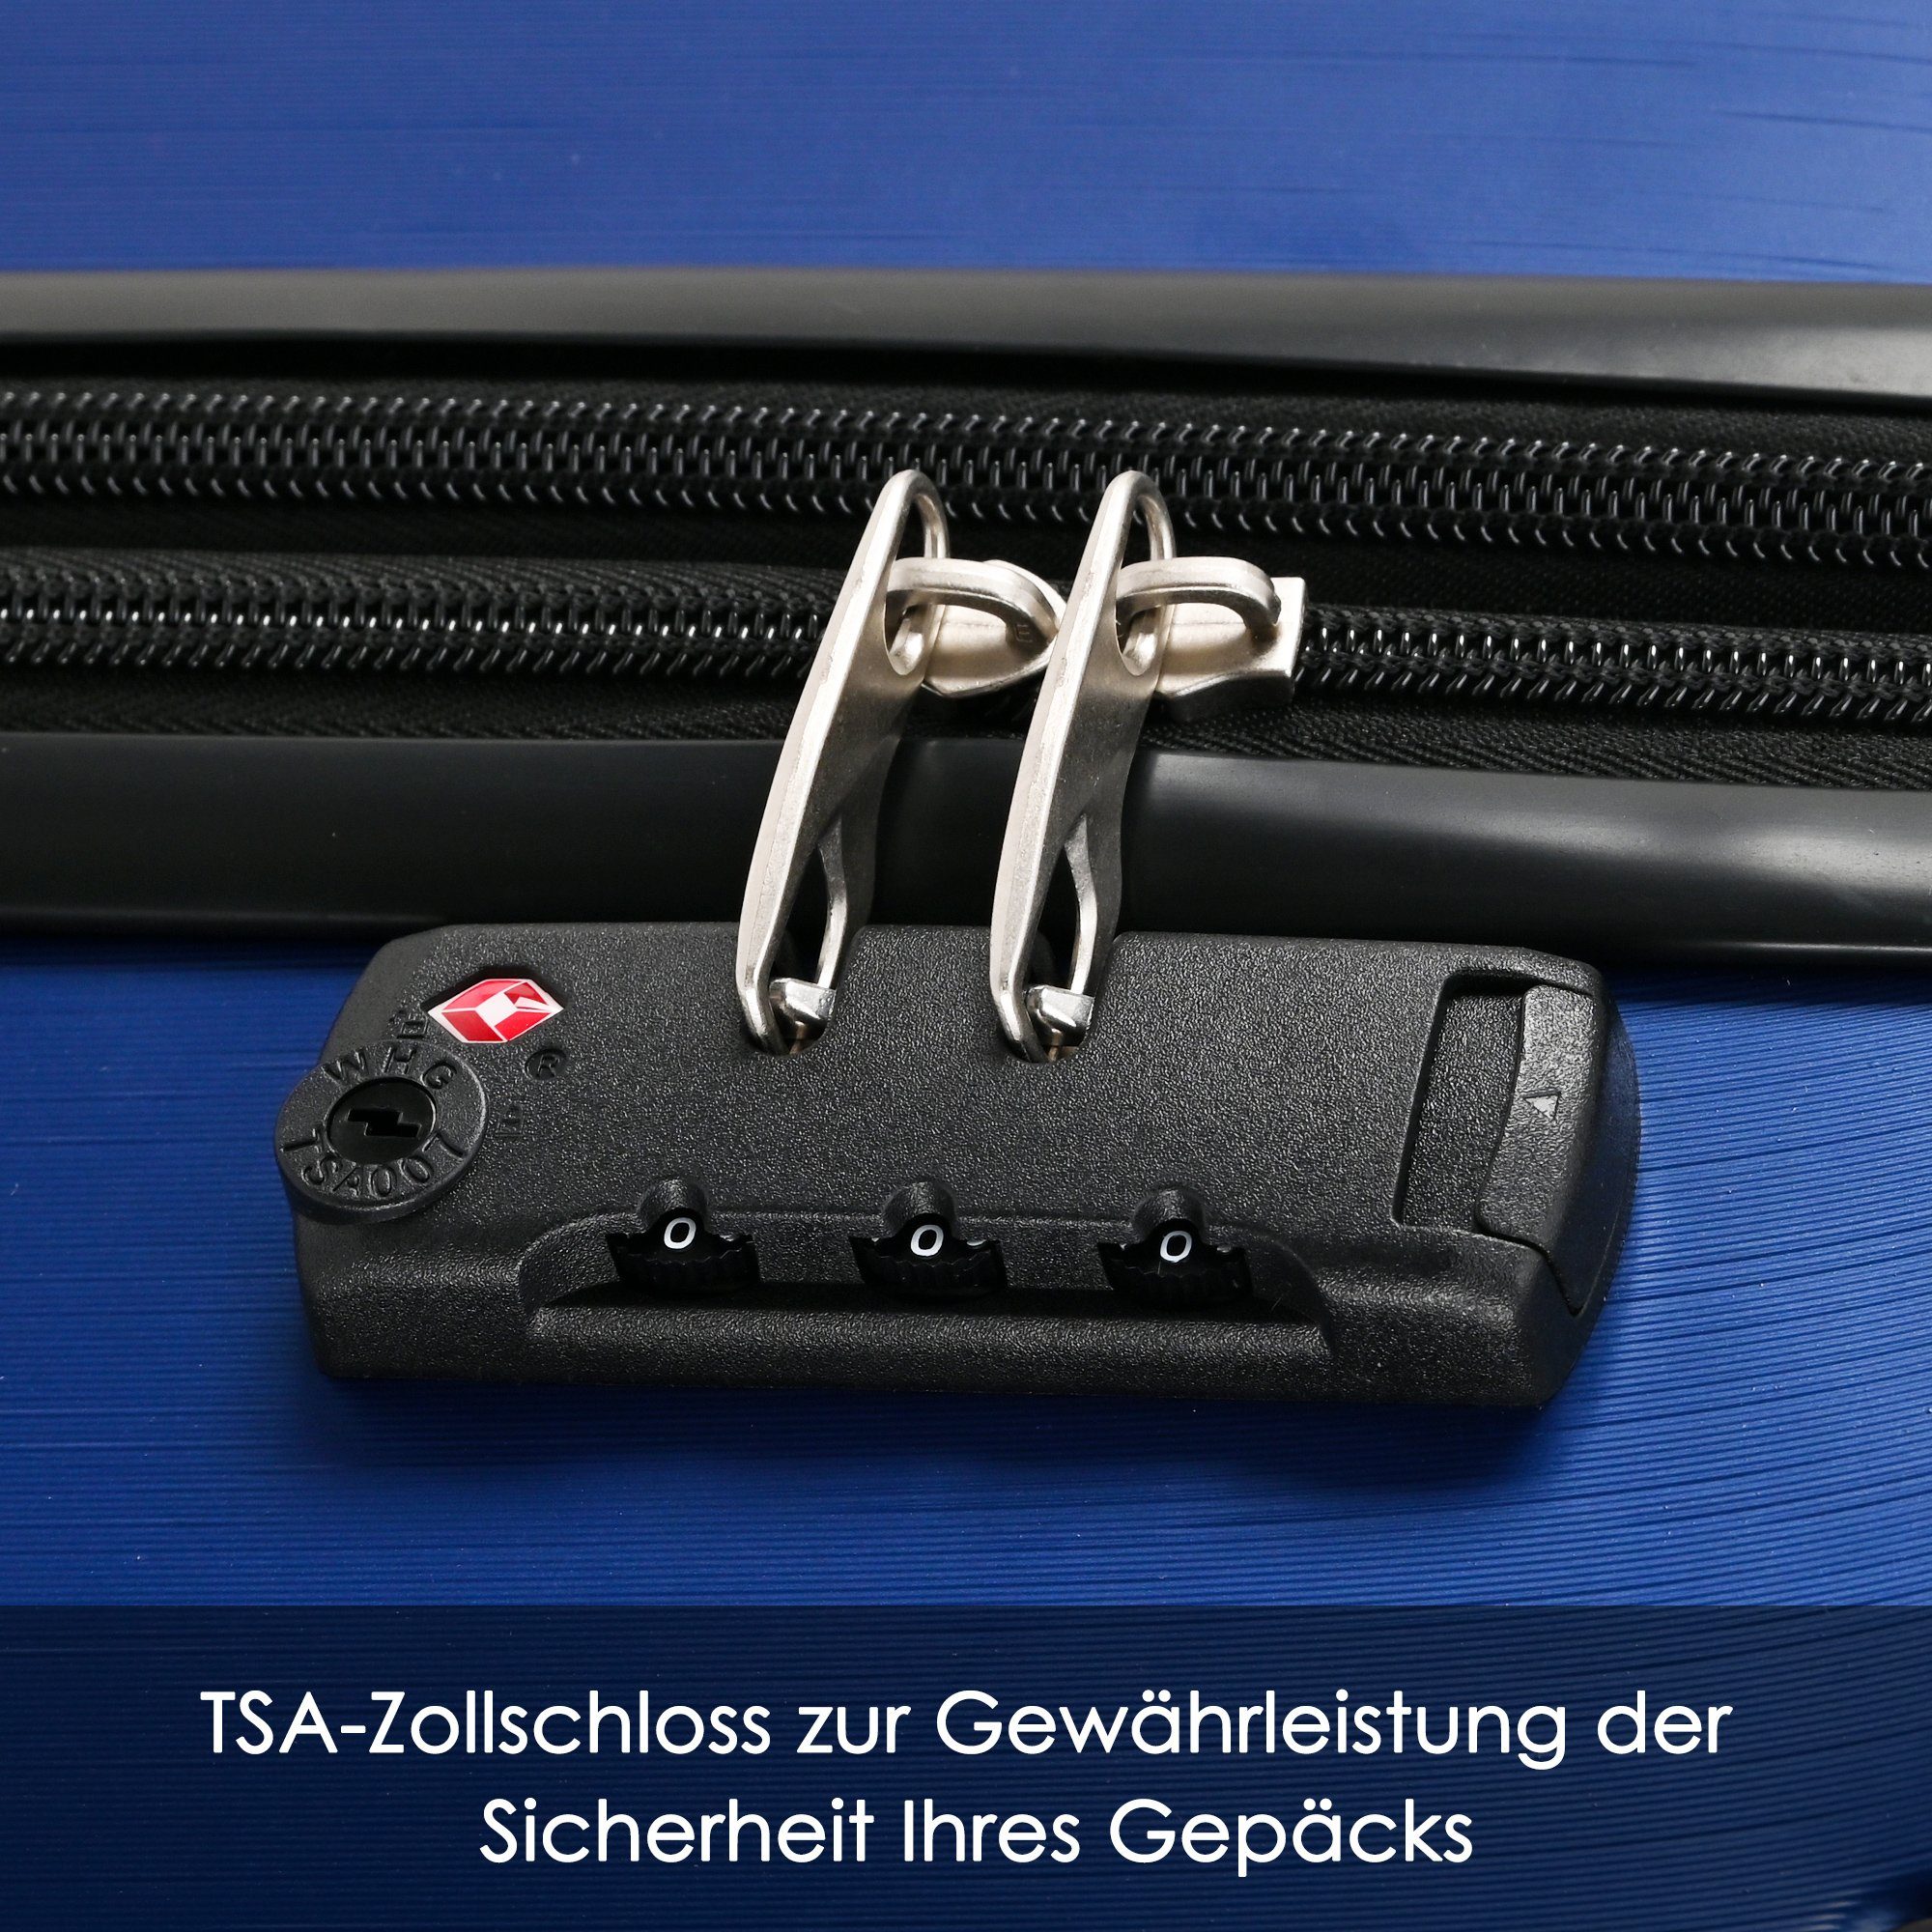 Ulife M-Größe:56.5*37.5*22.5 Blau ABS-Material, TSA Zollschloss, Reisekoffer 4 Handgepäck-Trolley Rollen,